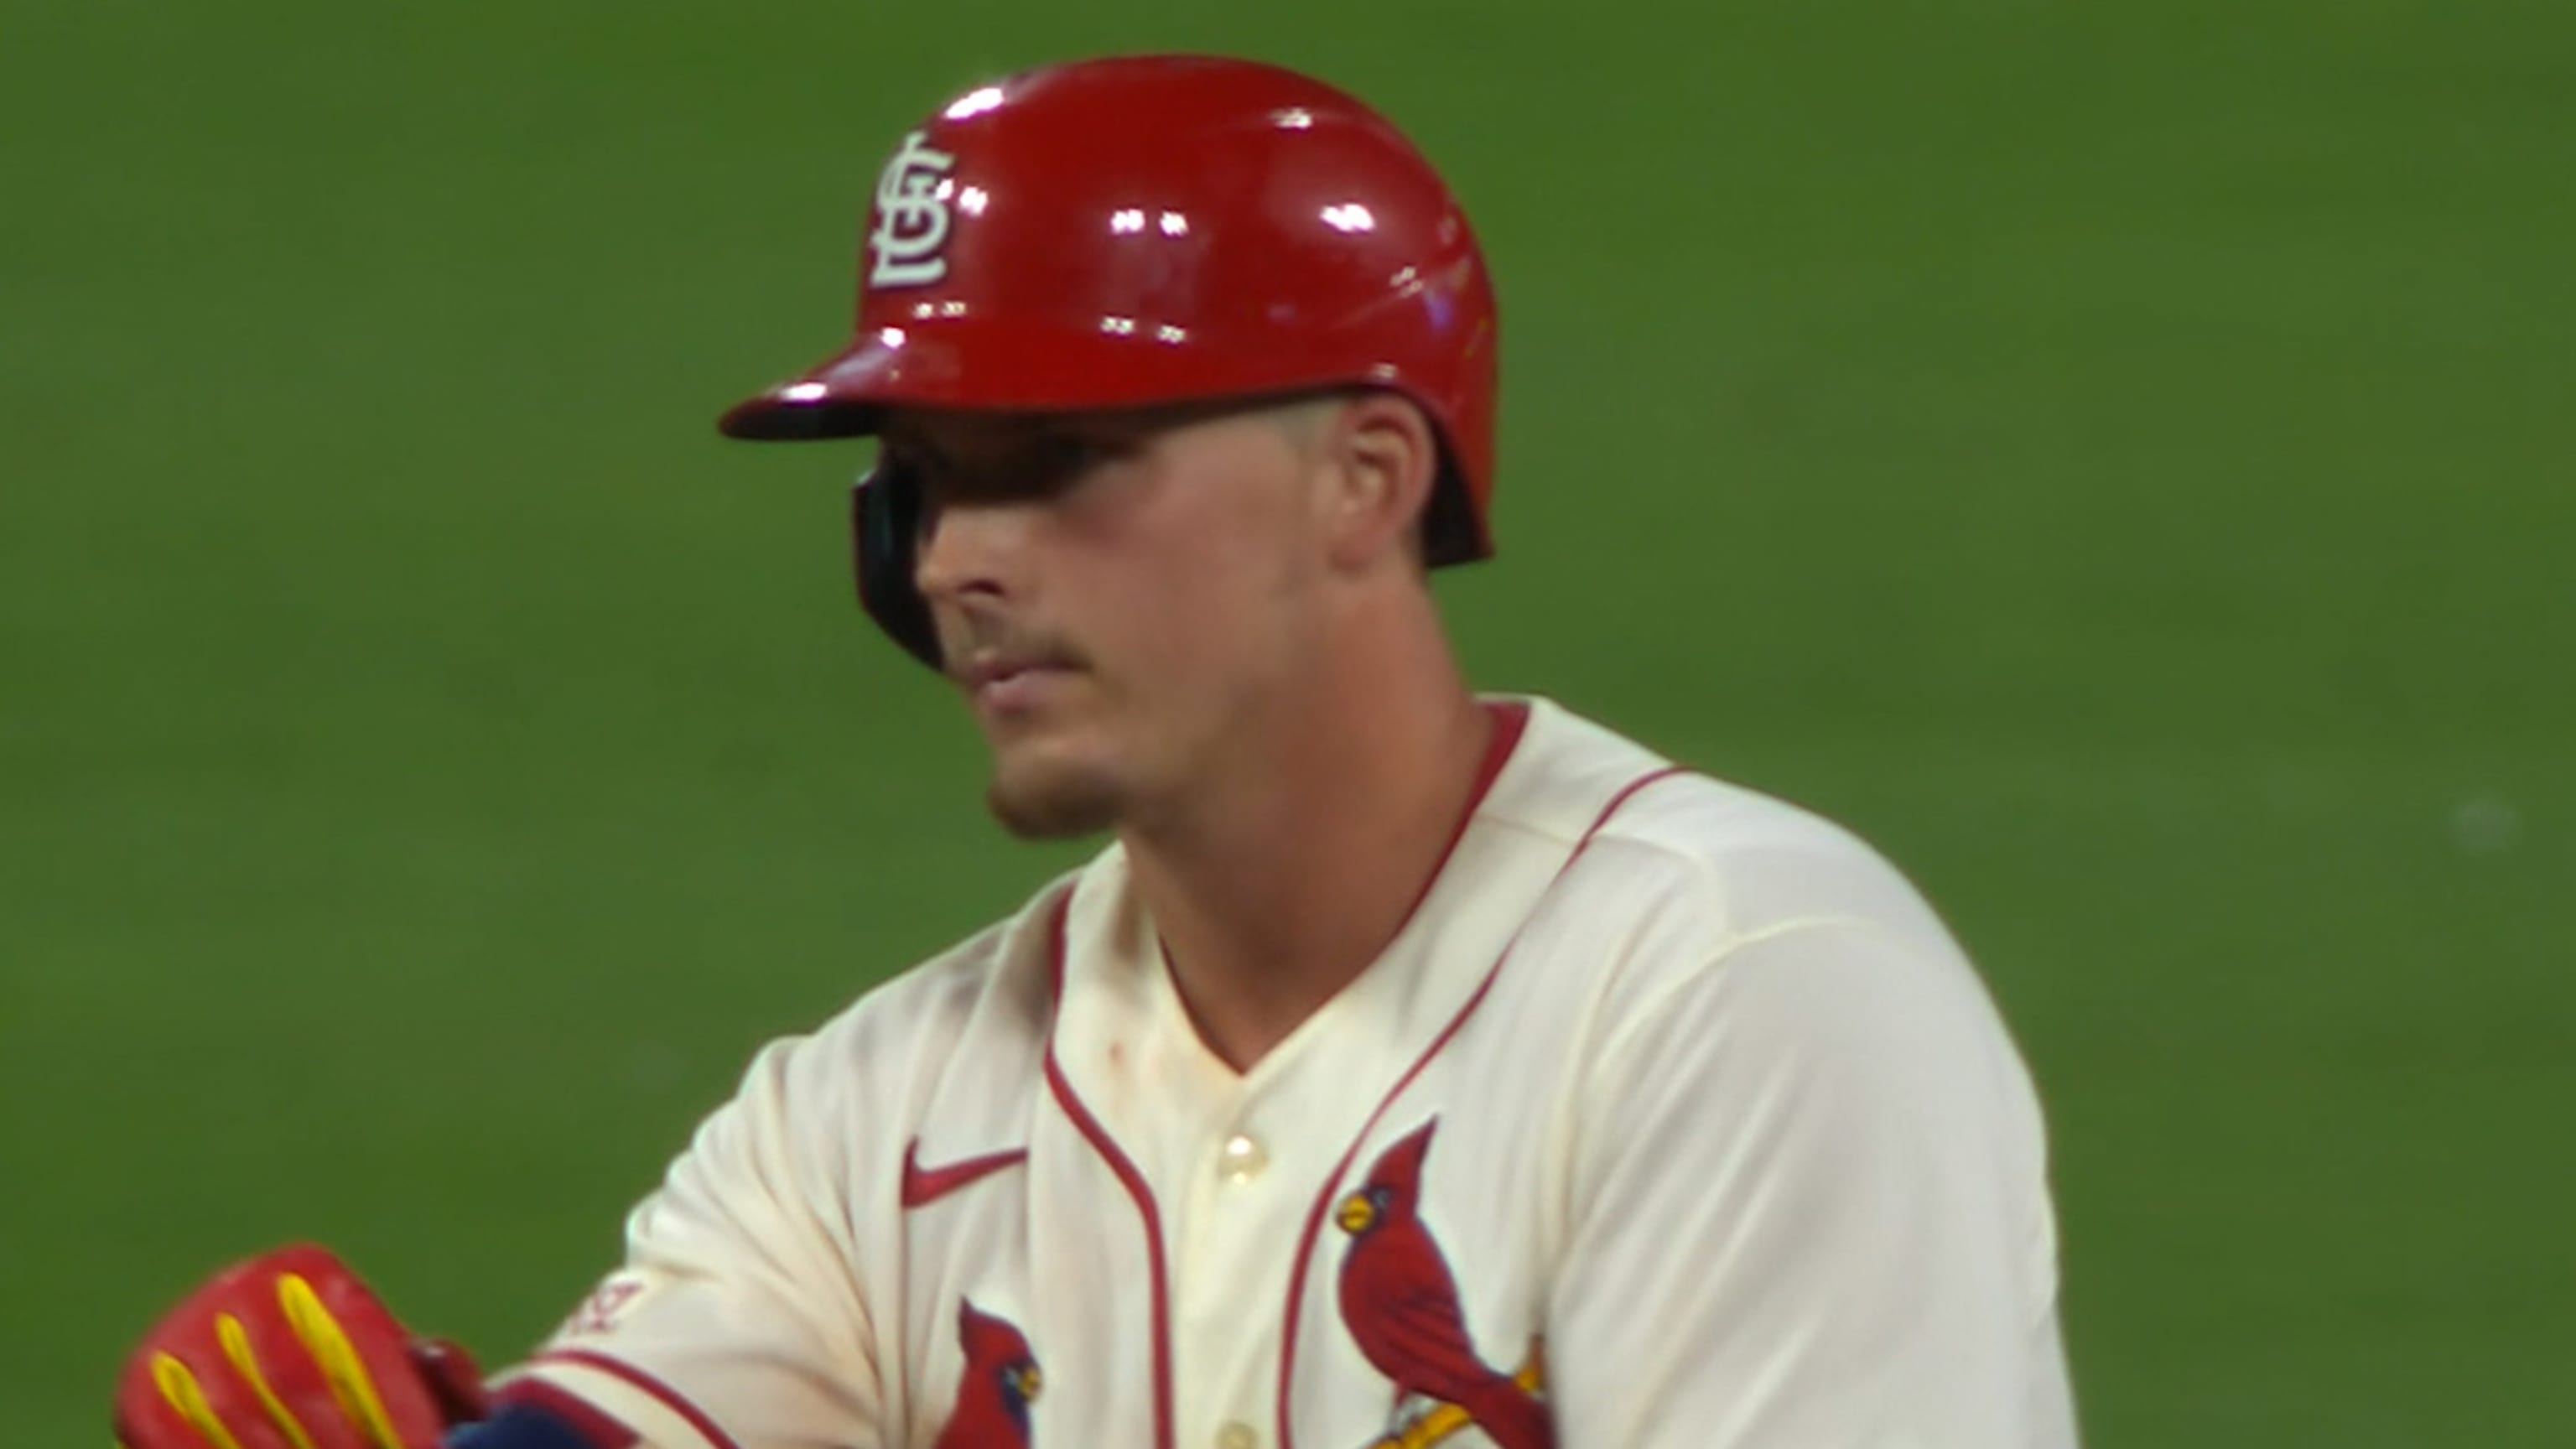 St. Louis Cardinals: Reacting to prospect Nolan Gorman's rank at third